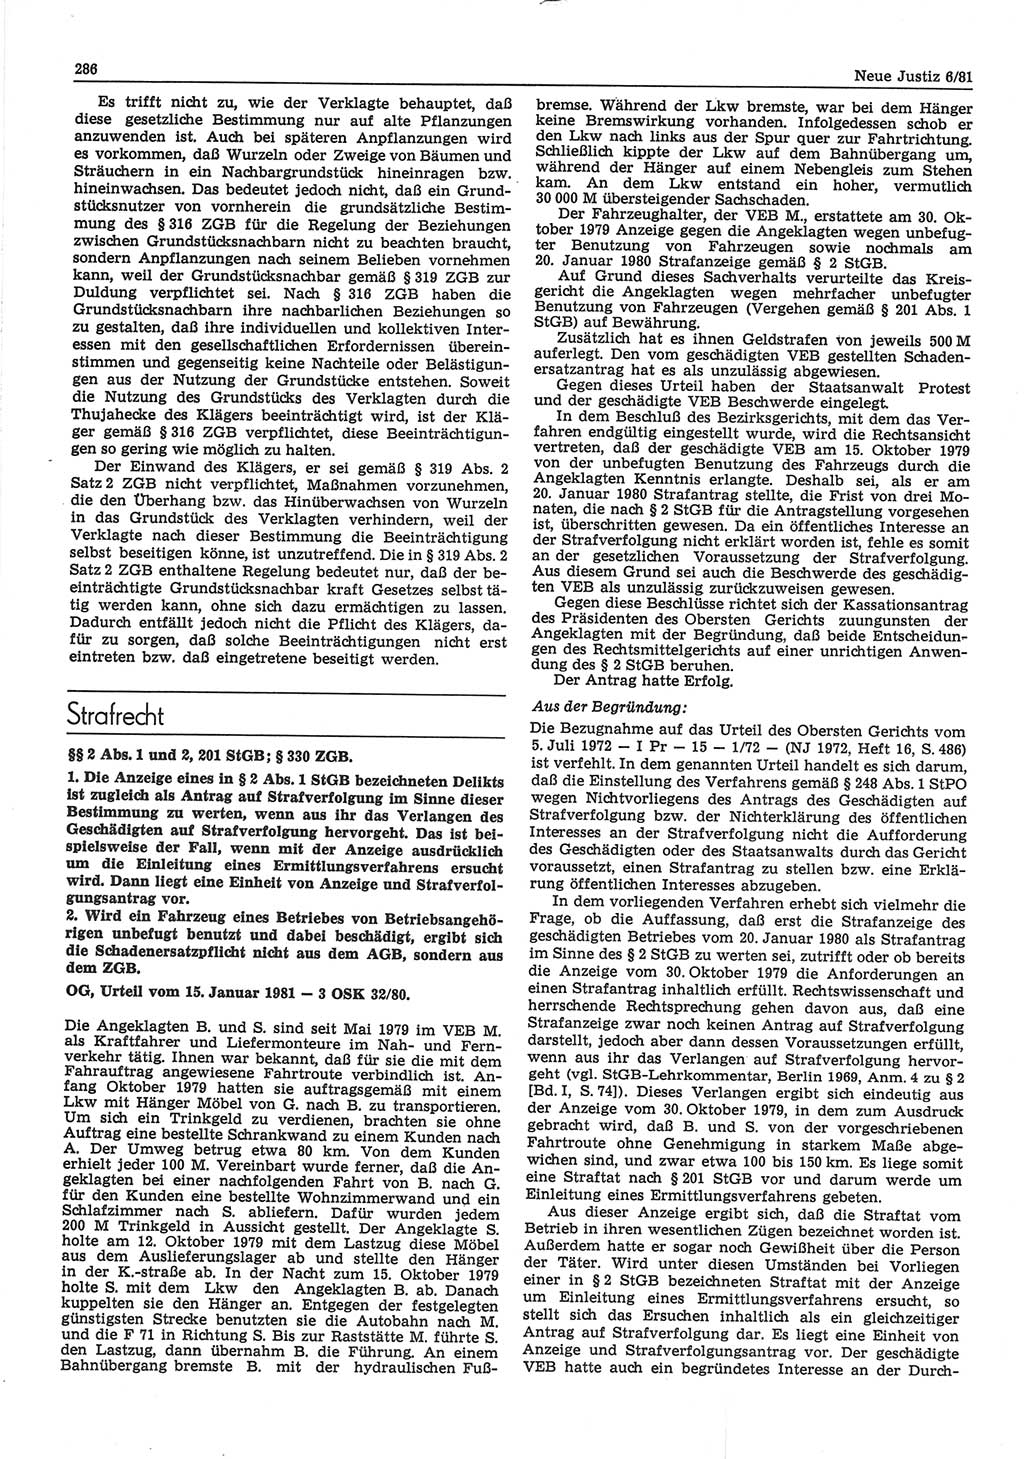 Neue Justiz (NJ), Zeitschrift für sozialistisches Recht und Gesetzlichkeit [Deutsche Demokratische Republik (DDR)], 35. Jahrgang 1981, Seite 286 (NJ DDR 1981, S. 286)